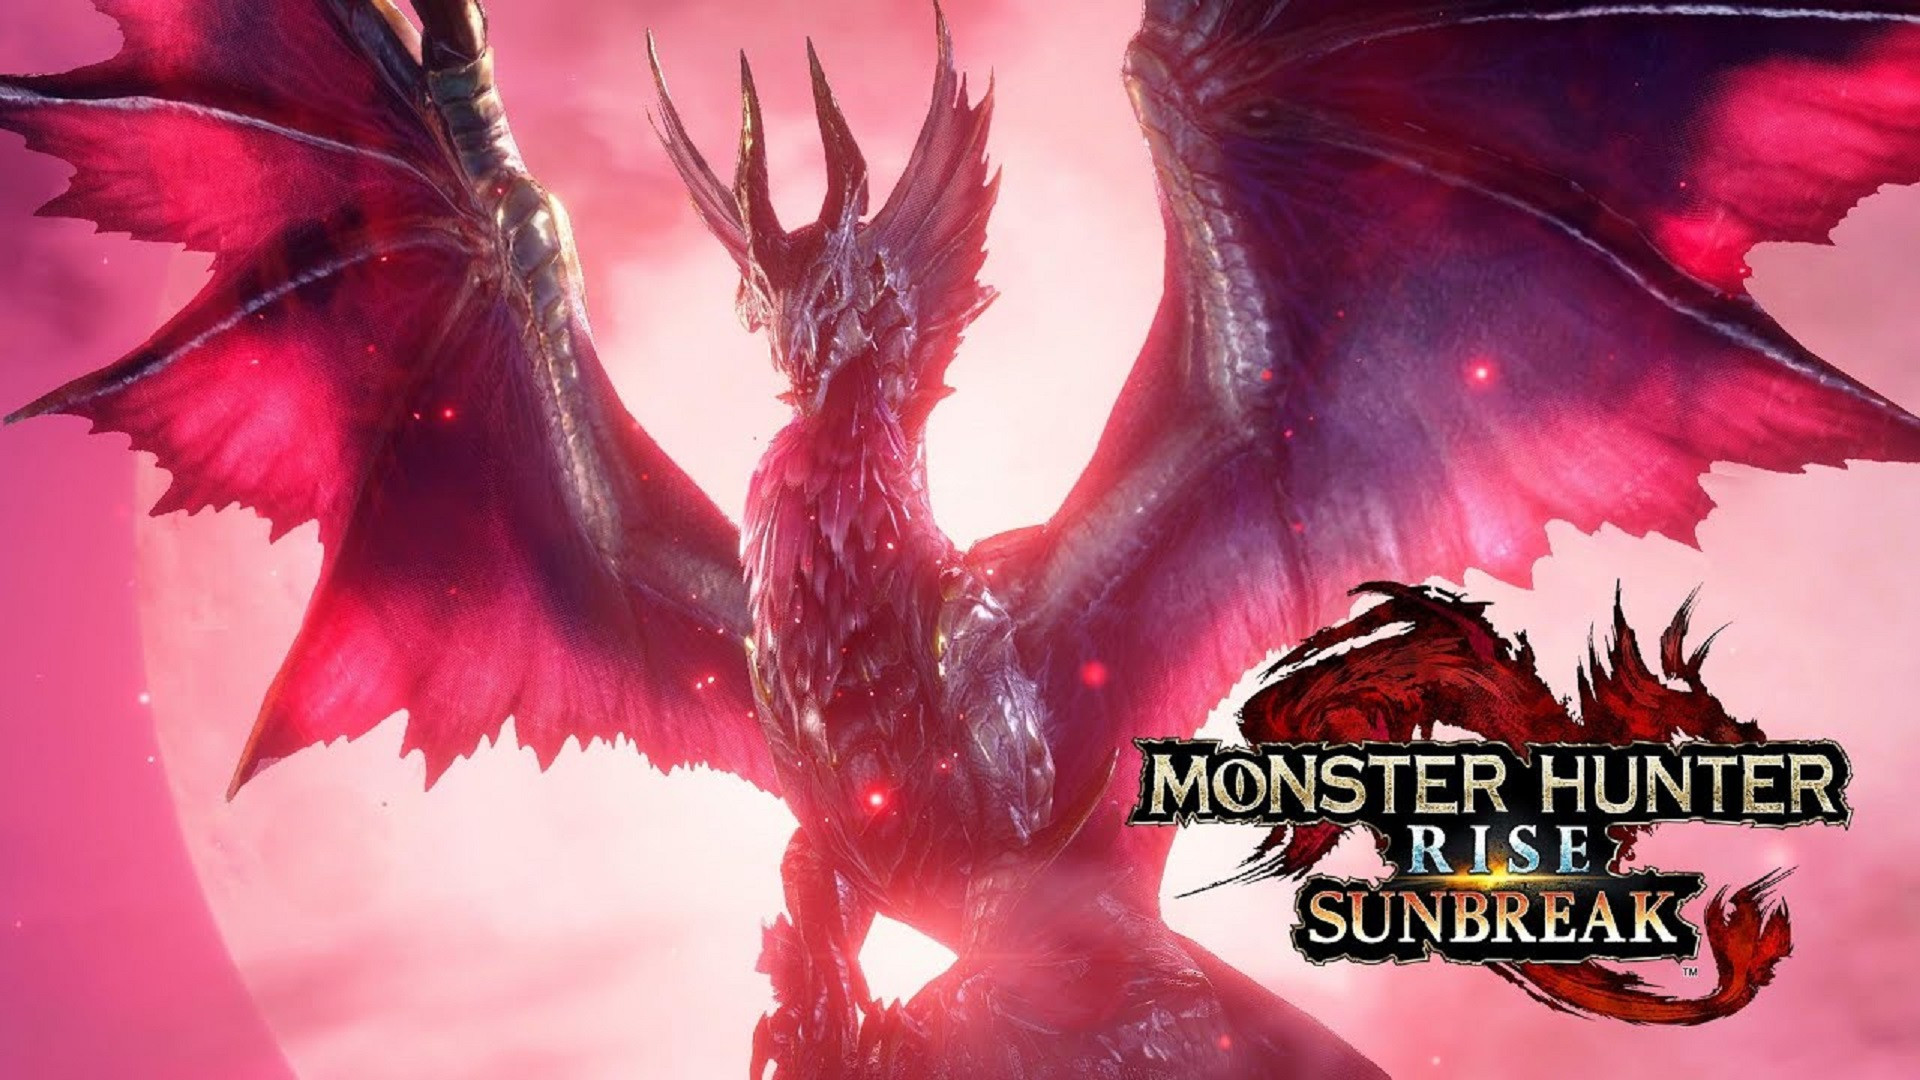 Monster hunter rise sunbreak tier list